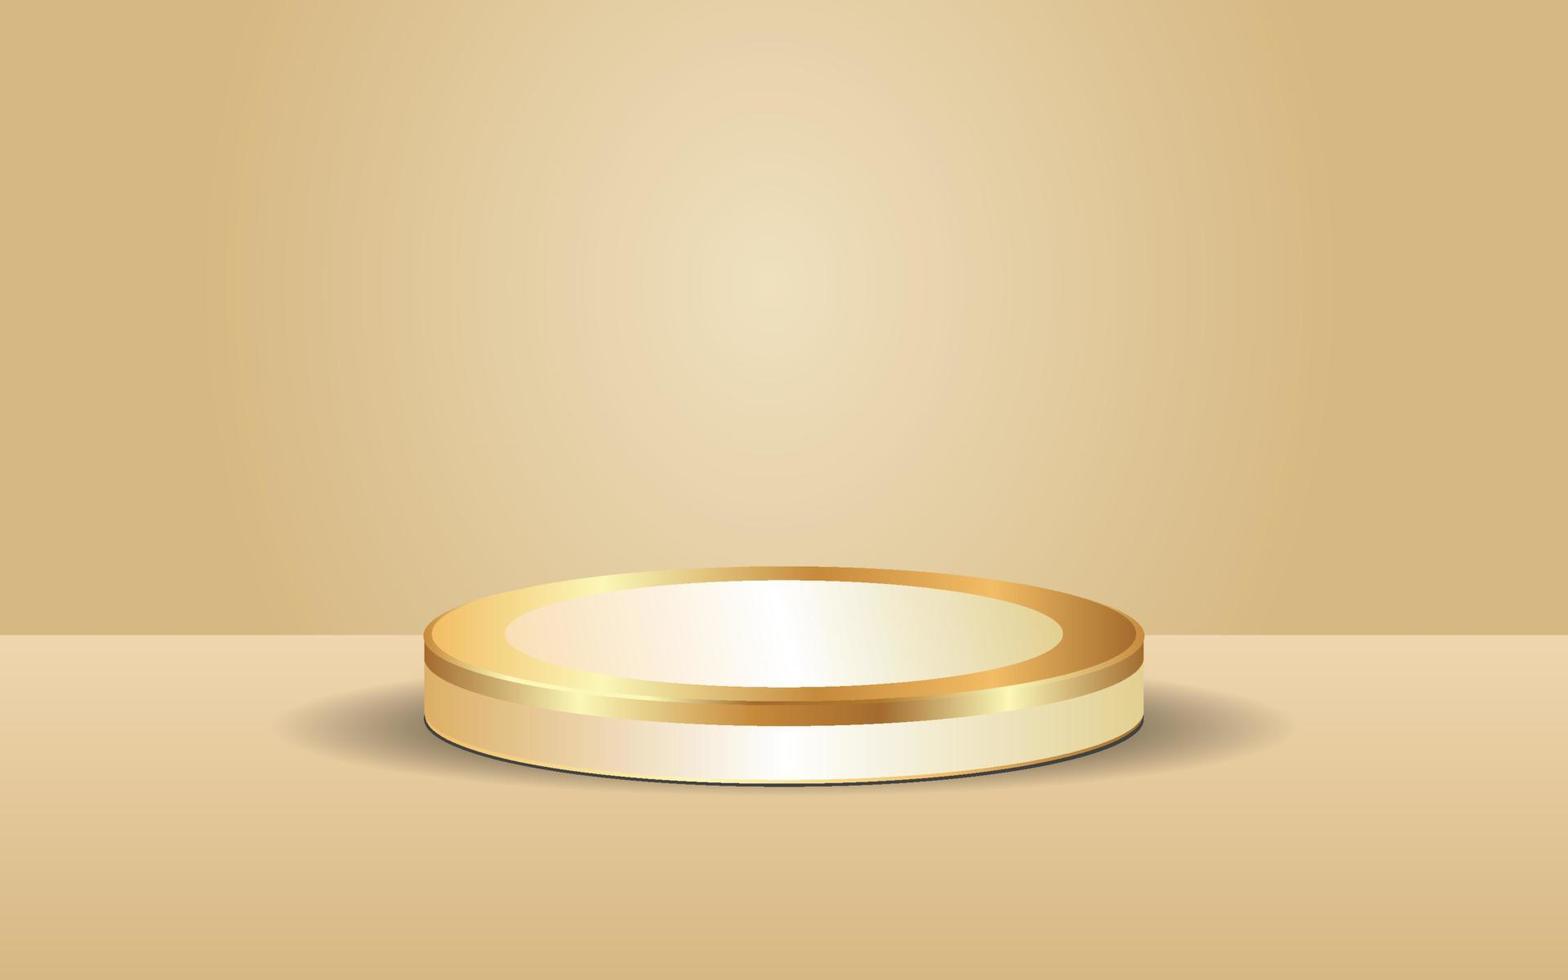 Illustration vectorielle de fond de luxe en or en forme de podium de style 3d pour promouvoir les ventes et le marketing vecteur